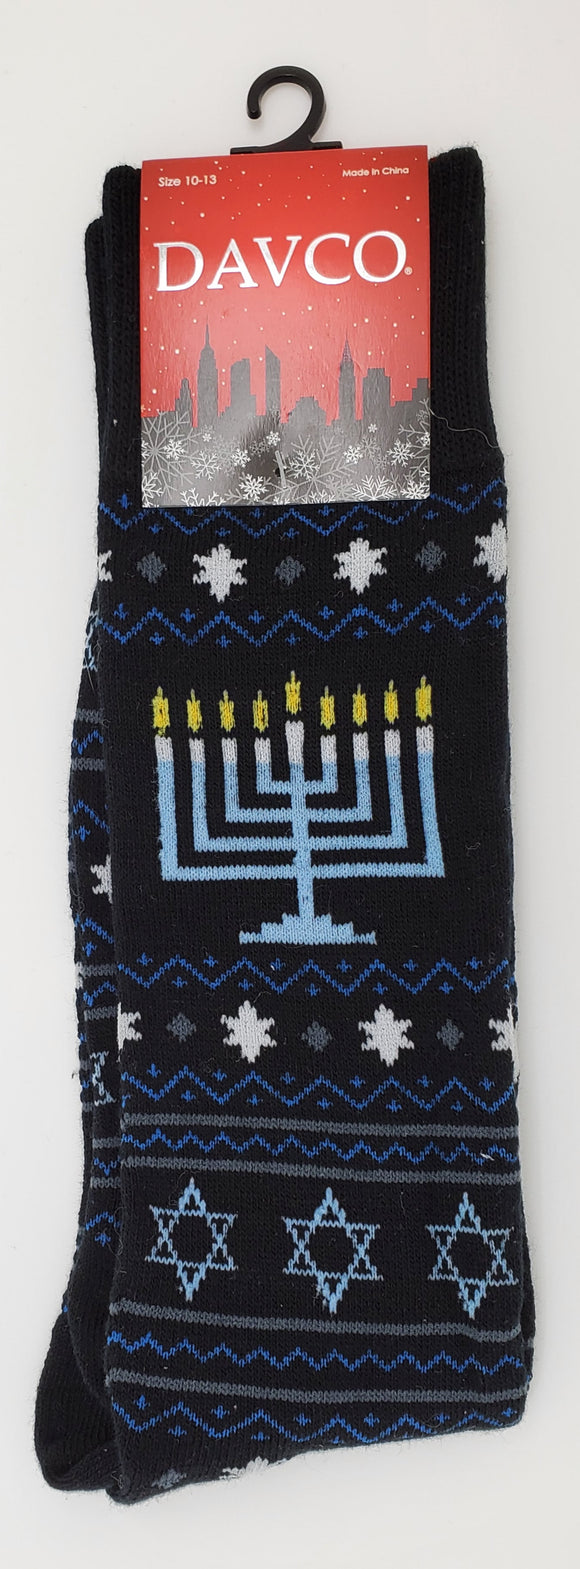 DAVCO the Hanukkah Menorah Socks for size 10-13